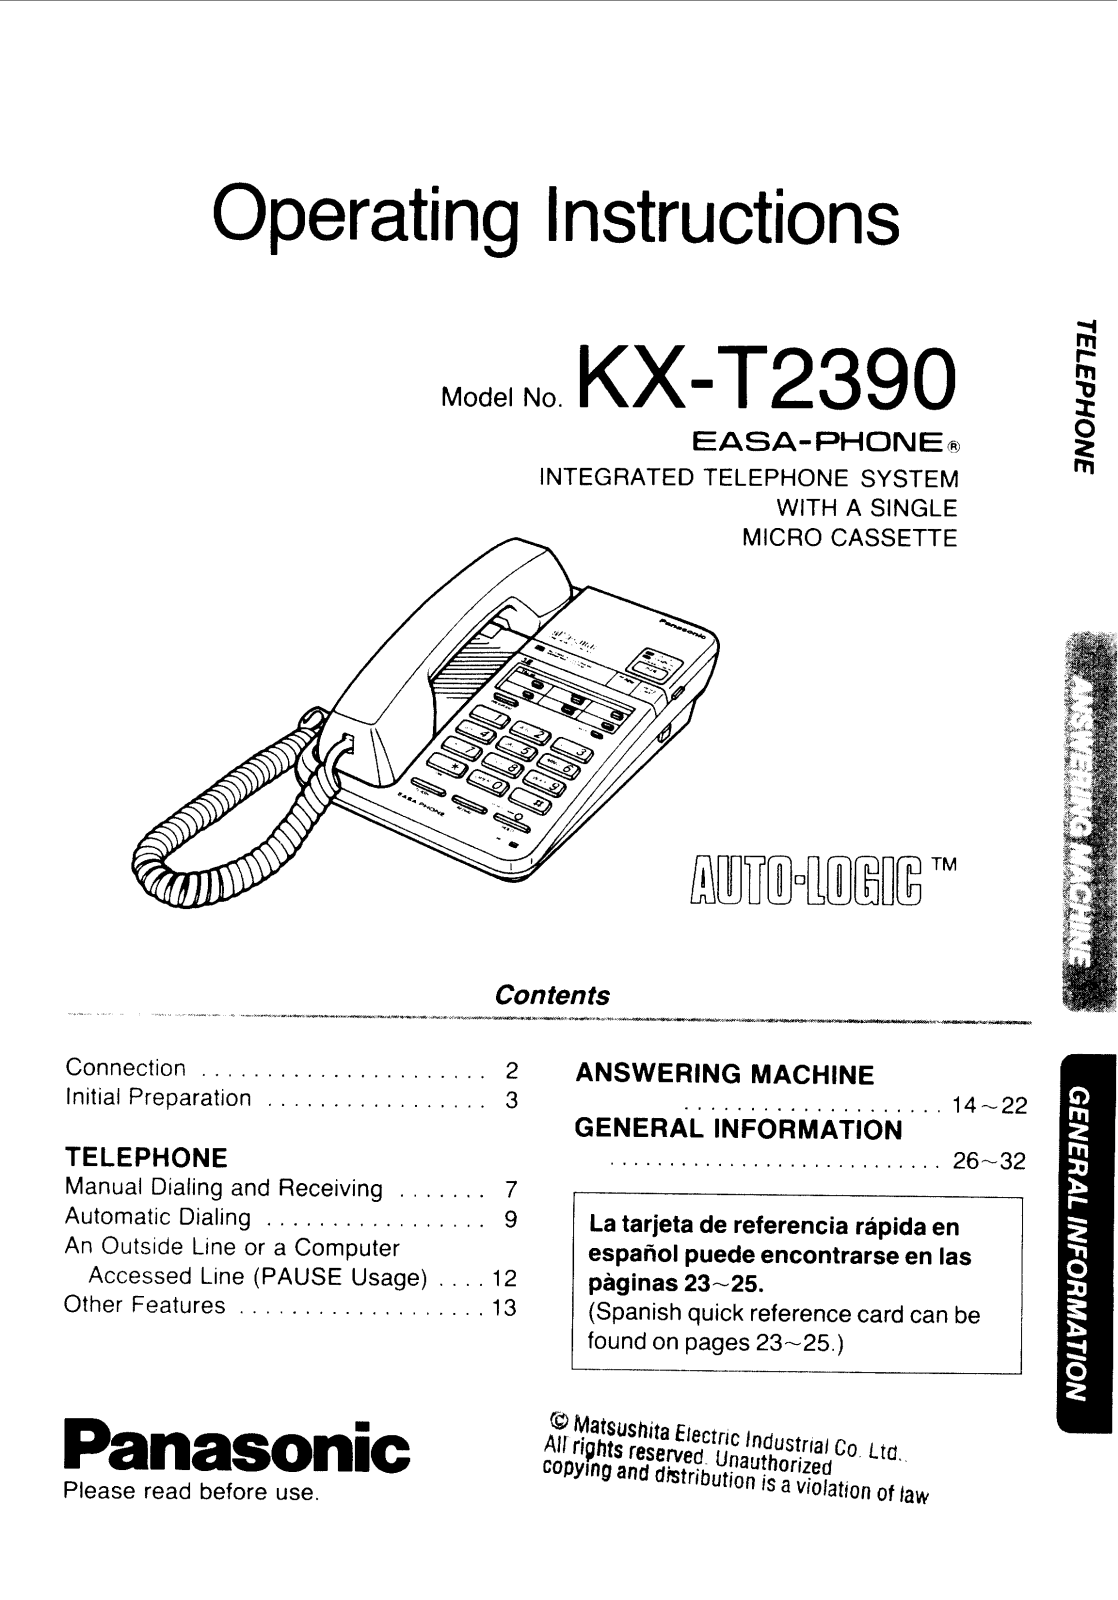 Panasonic kx-t2390 Operation Manual